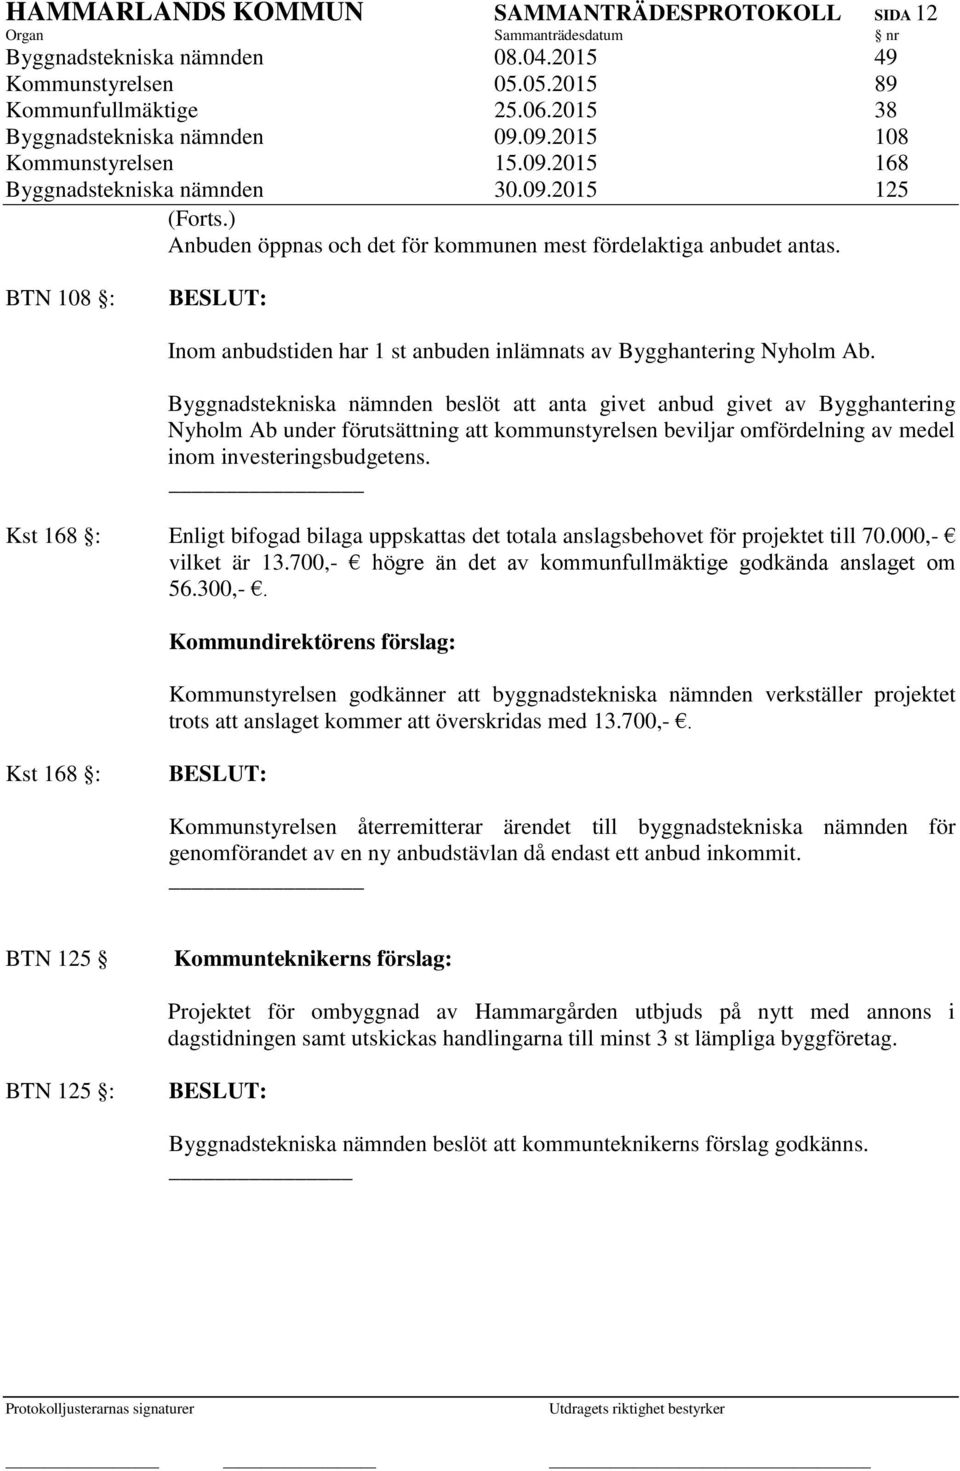 BTN 108 : Inom anbudstiden har 1 st anbuden inlämnats av Bygghantering Nyholm Ab.